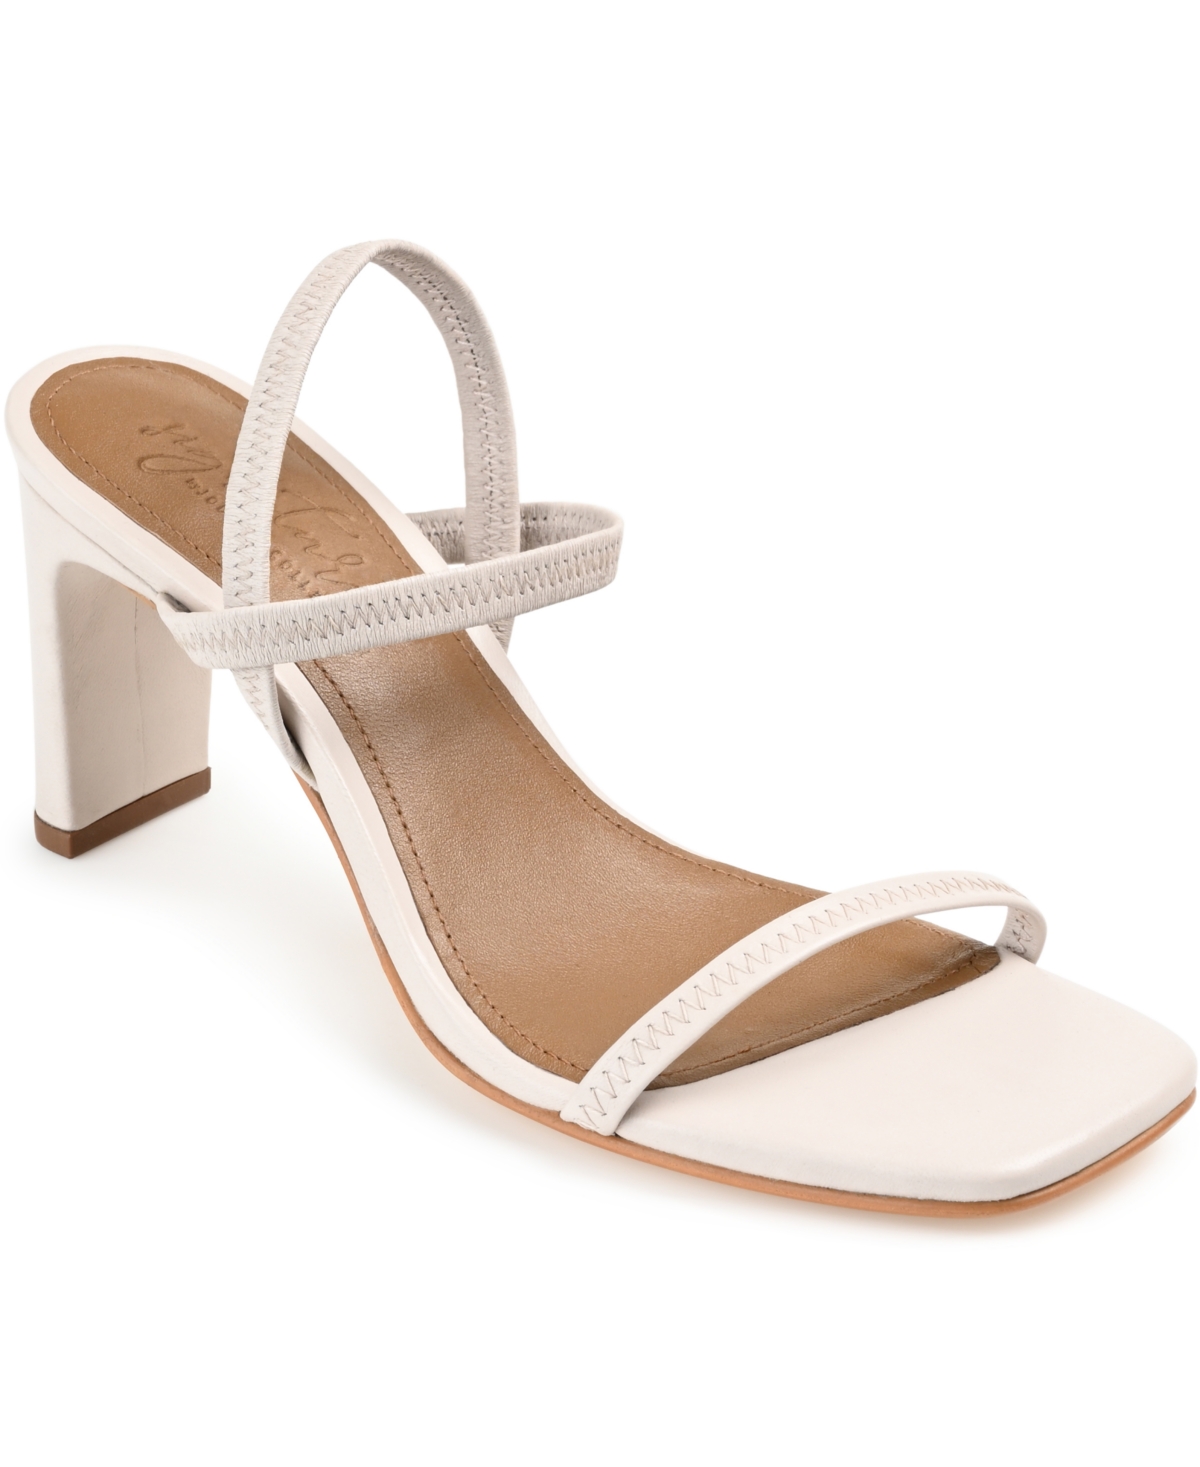 Women's Lenonn Block Heel Dress Sandals - Off White